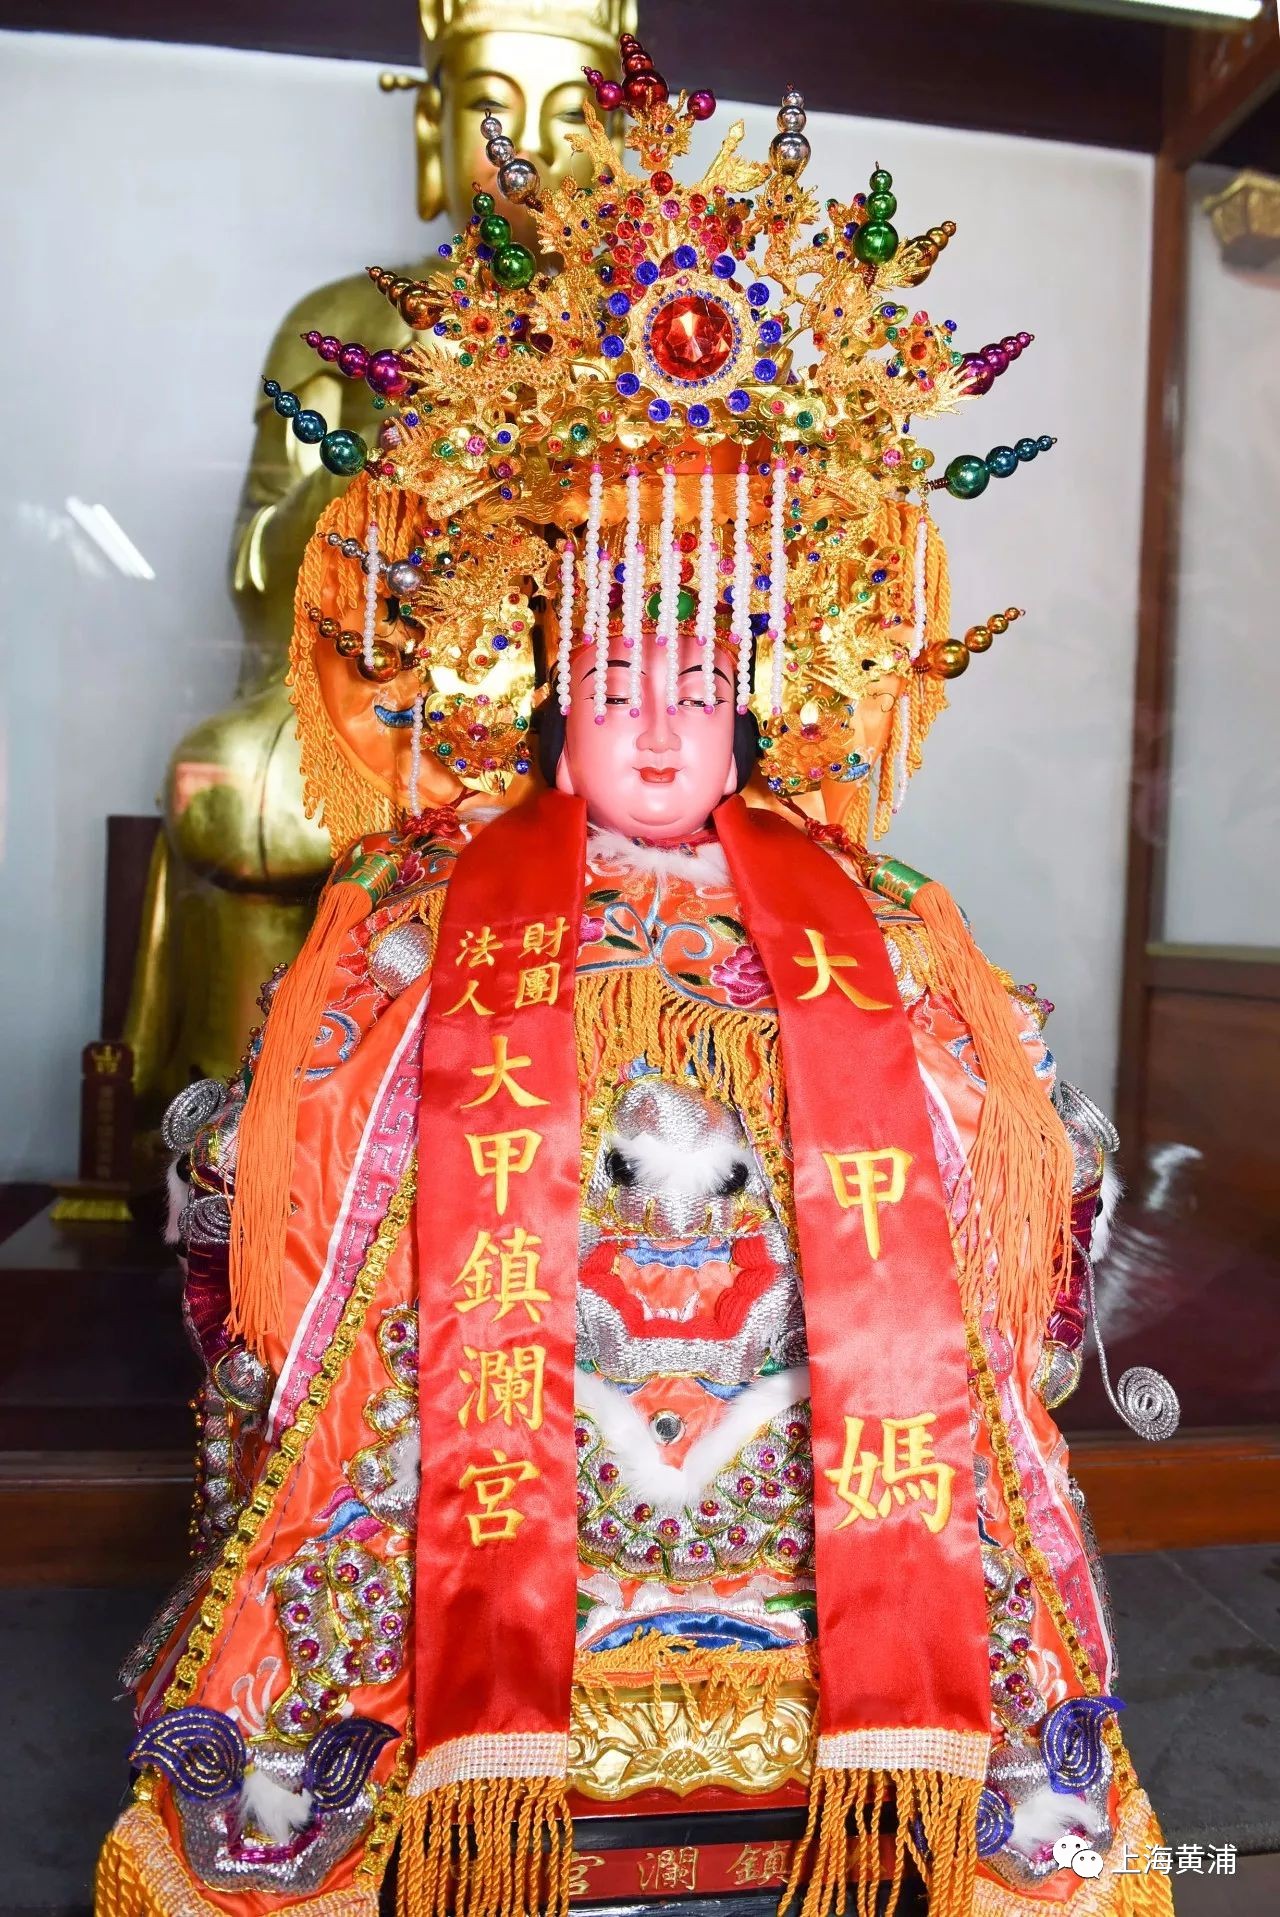 大甲镇澜宫向上海城隍庙捐赠牛樟木雕妈祖圣像